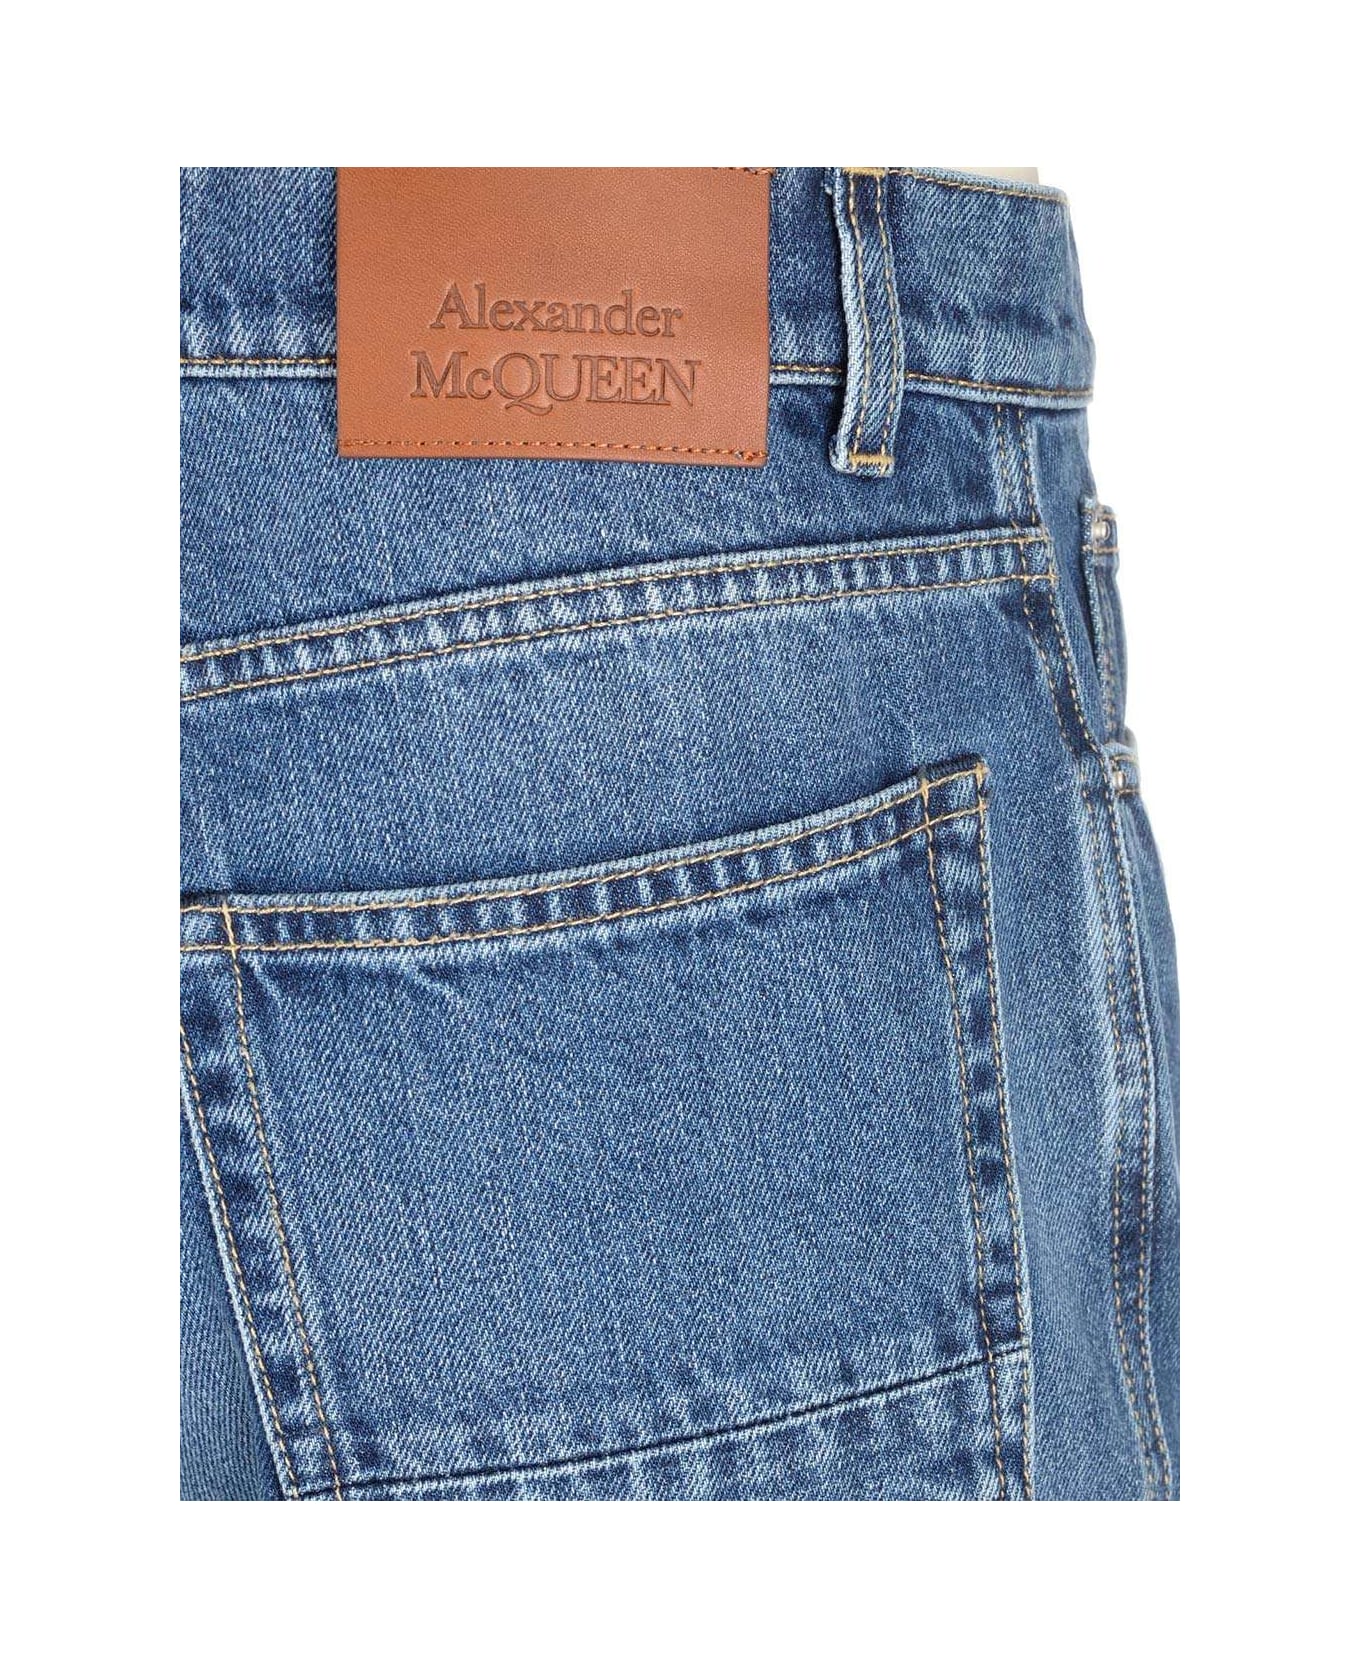 Alexander McQueen Bootcut Jeans - Blue デニム